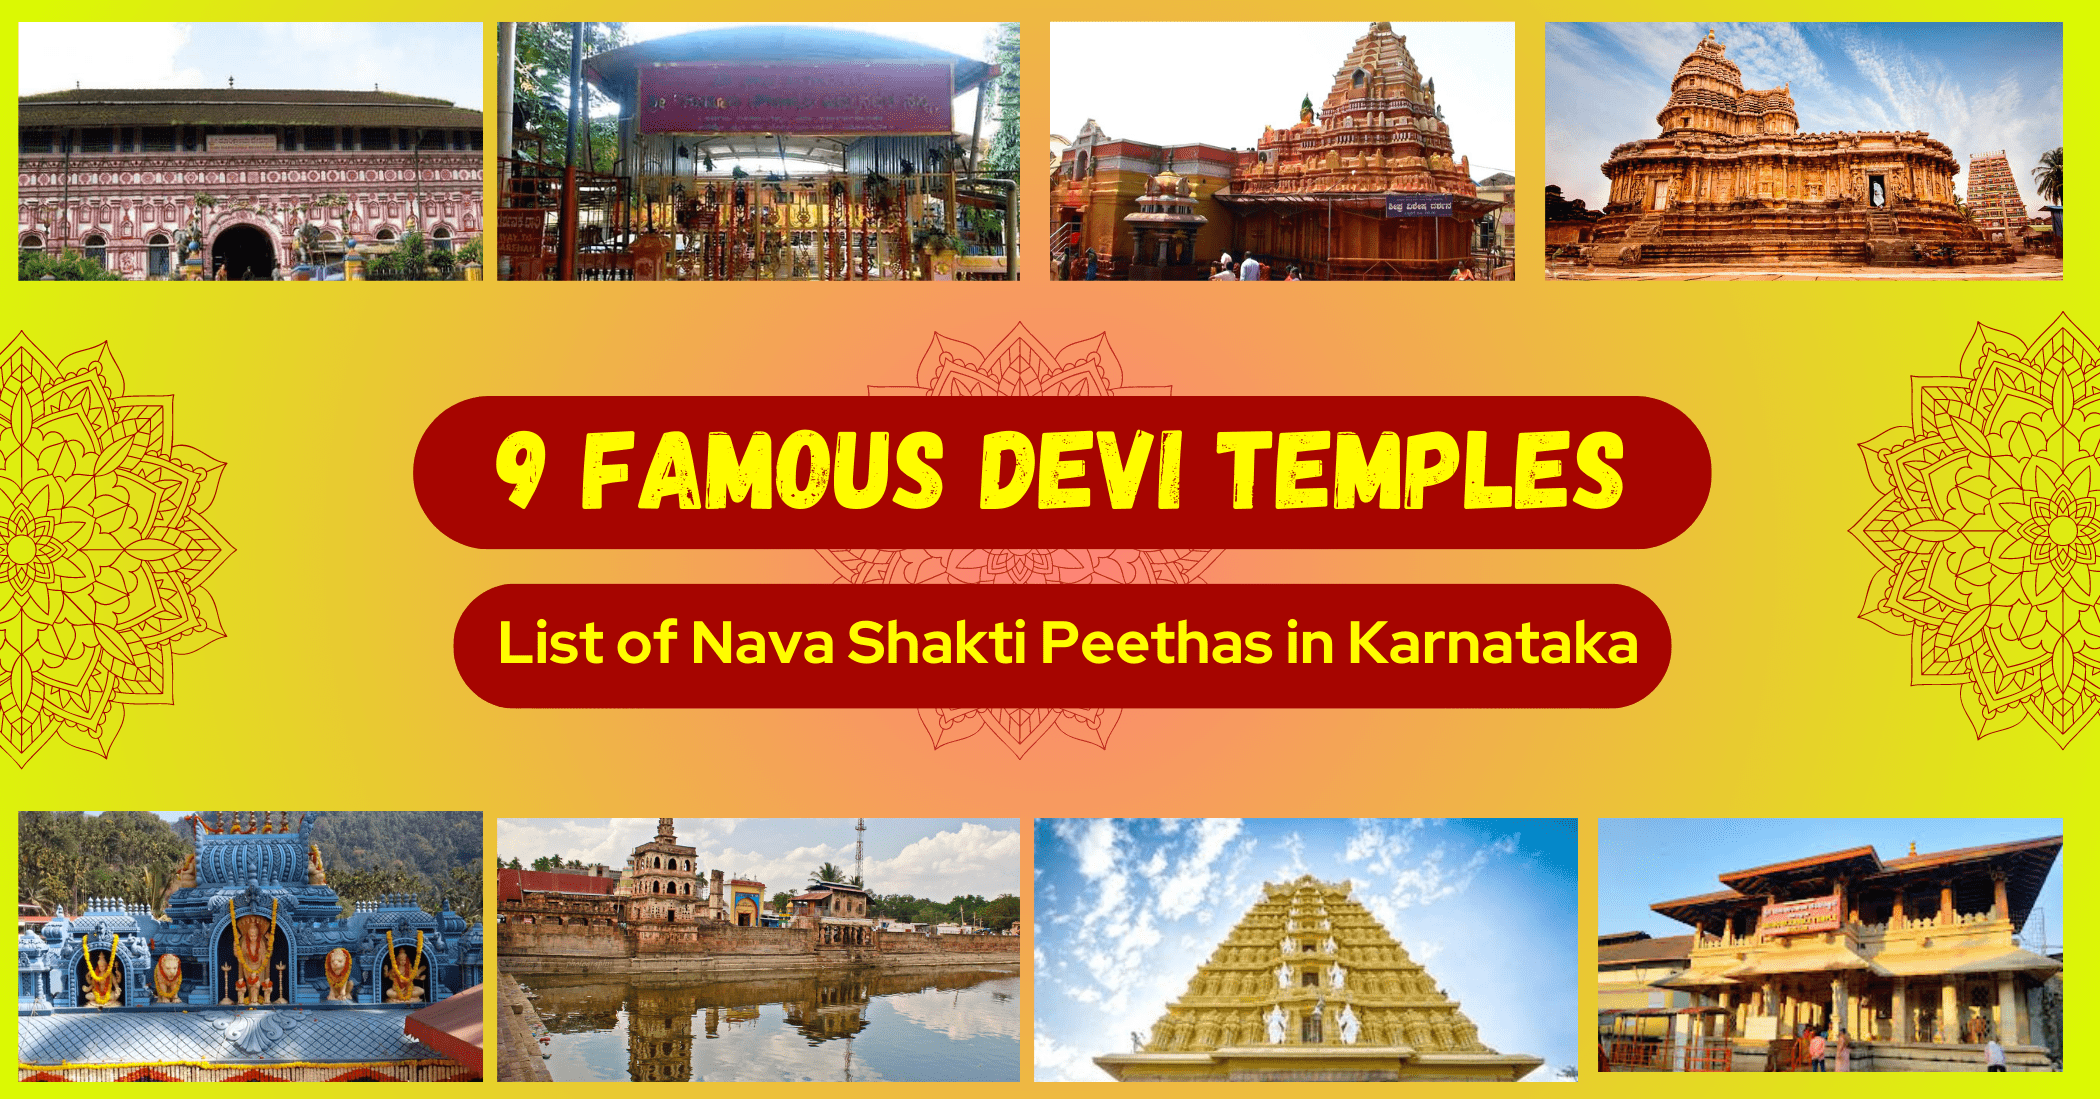 9 Famous Devi Temples: List of Nava Shakti Peethas in Karnataka